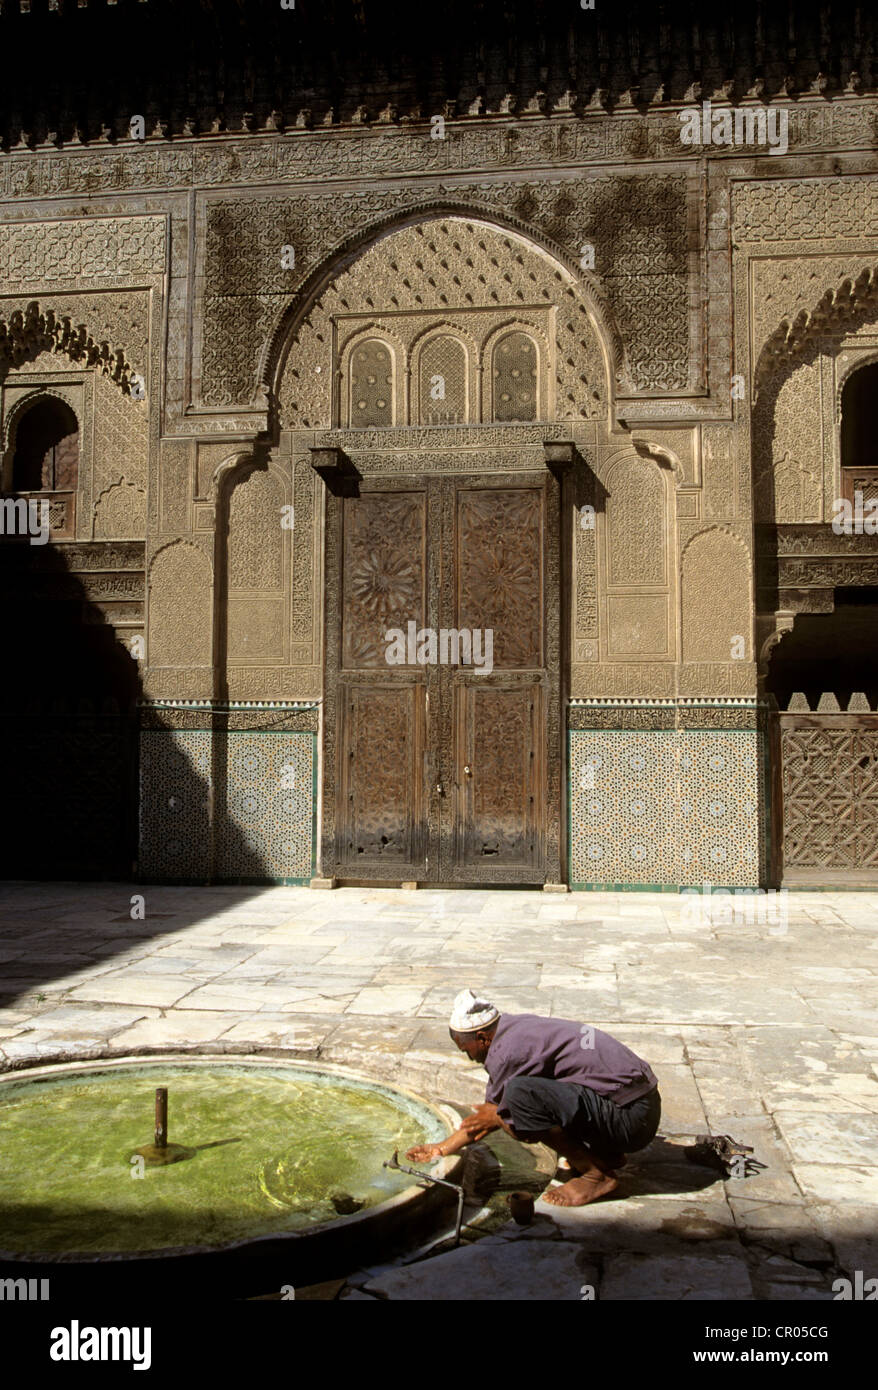 Il Marocco, Alta Altas, Marrakech città imperiale, medina elencati come patrimonio mondiale dall' UNESCO, Ben Youssef Medersa (scuola coranica) Foto Stock